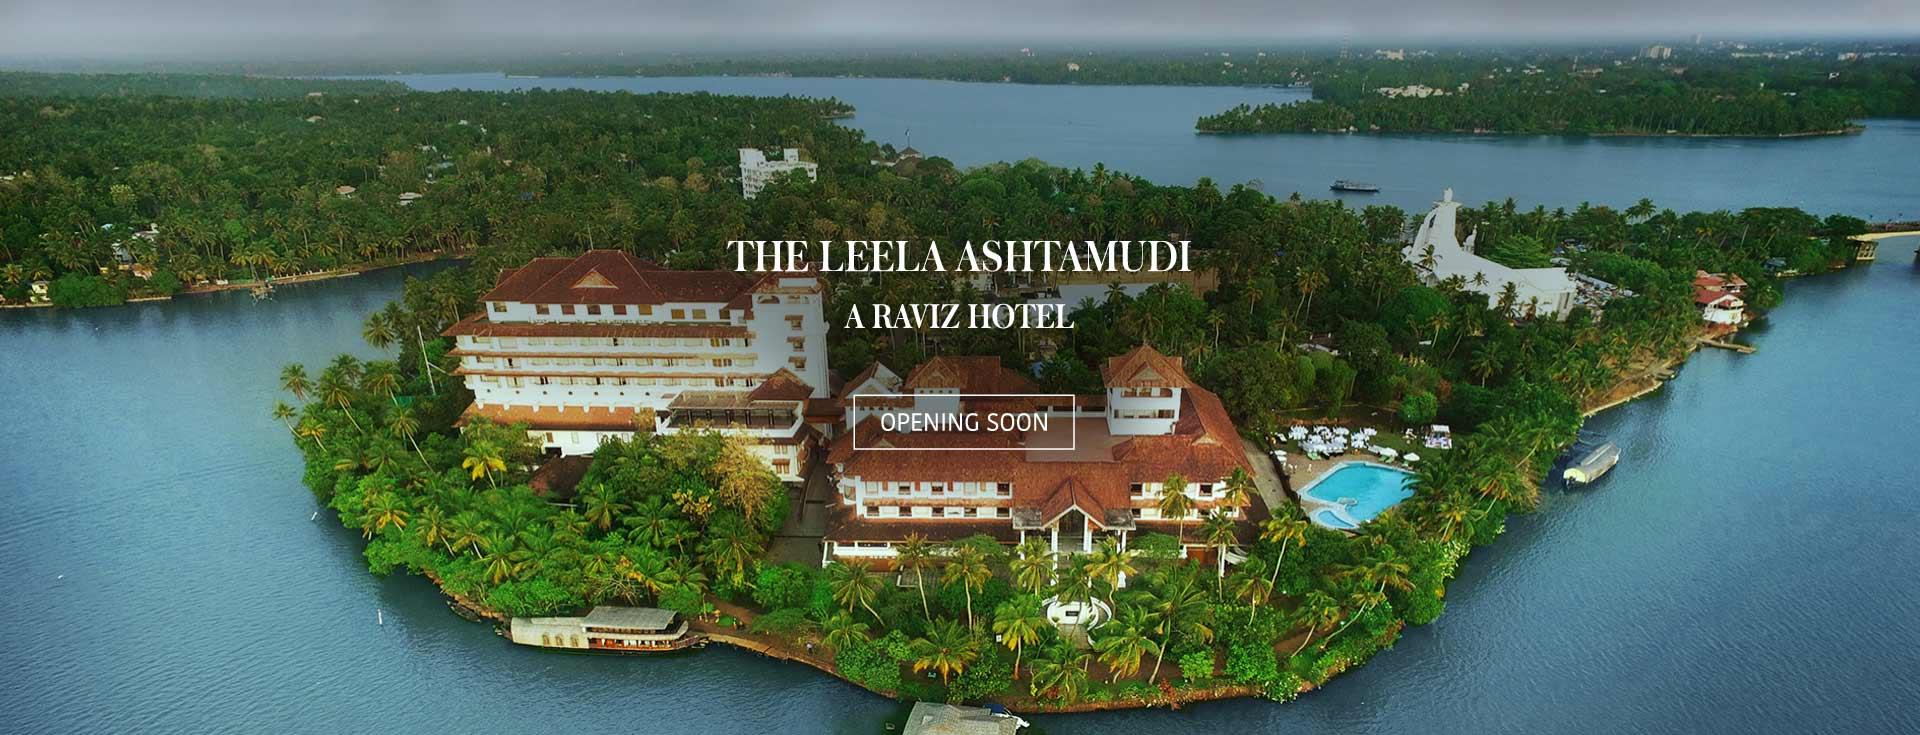 Hotel in Kerala